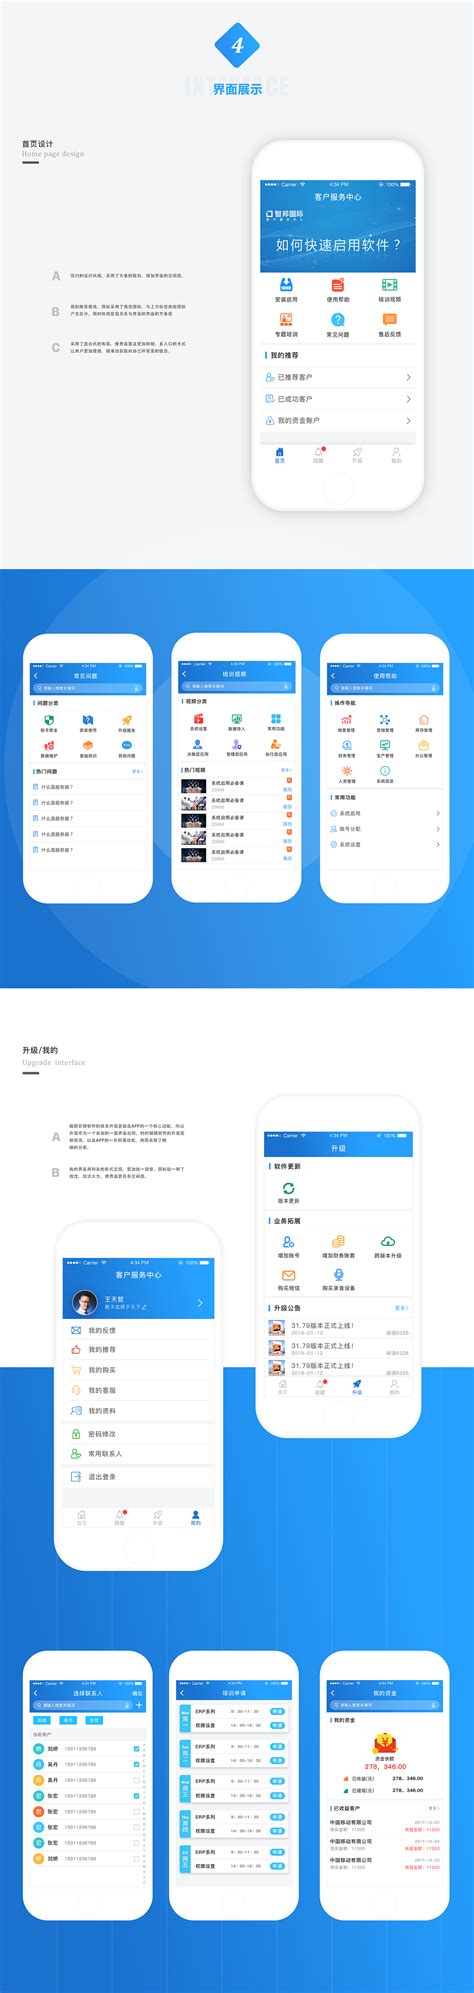 至尊·国际·app(中国)下载下载_官方版|安卓|v1.7.0下载_九蛙工具箱